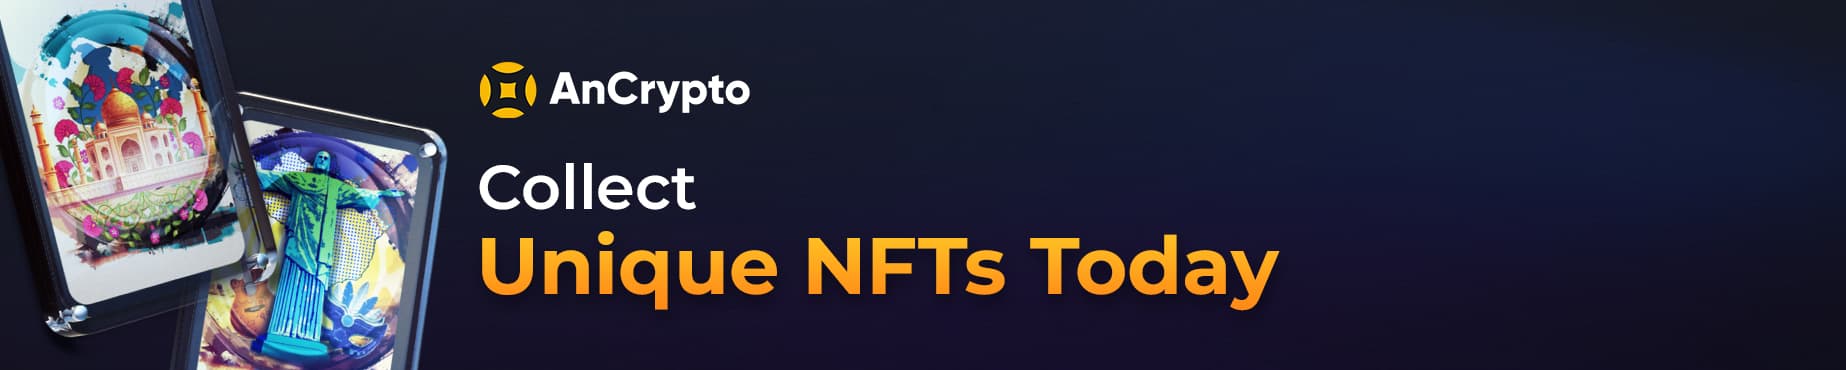 collect unique NFTs cta button